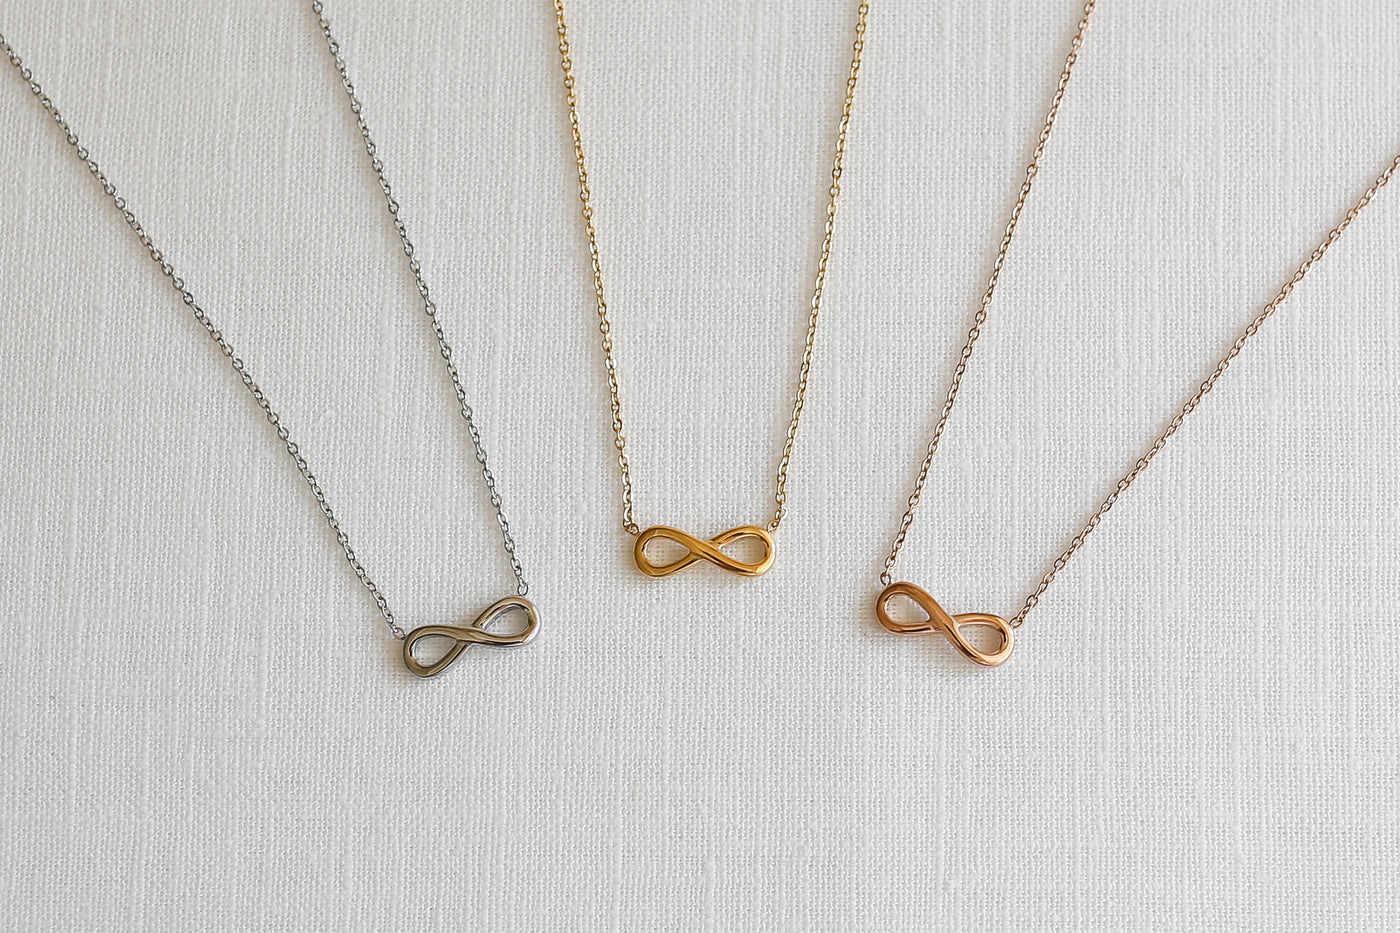  Drei alltagstaugliche Halsketten mit Infinity Anhänger in jeweils Silber, Gold und Roségold auf Stoff